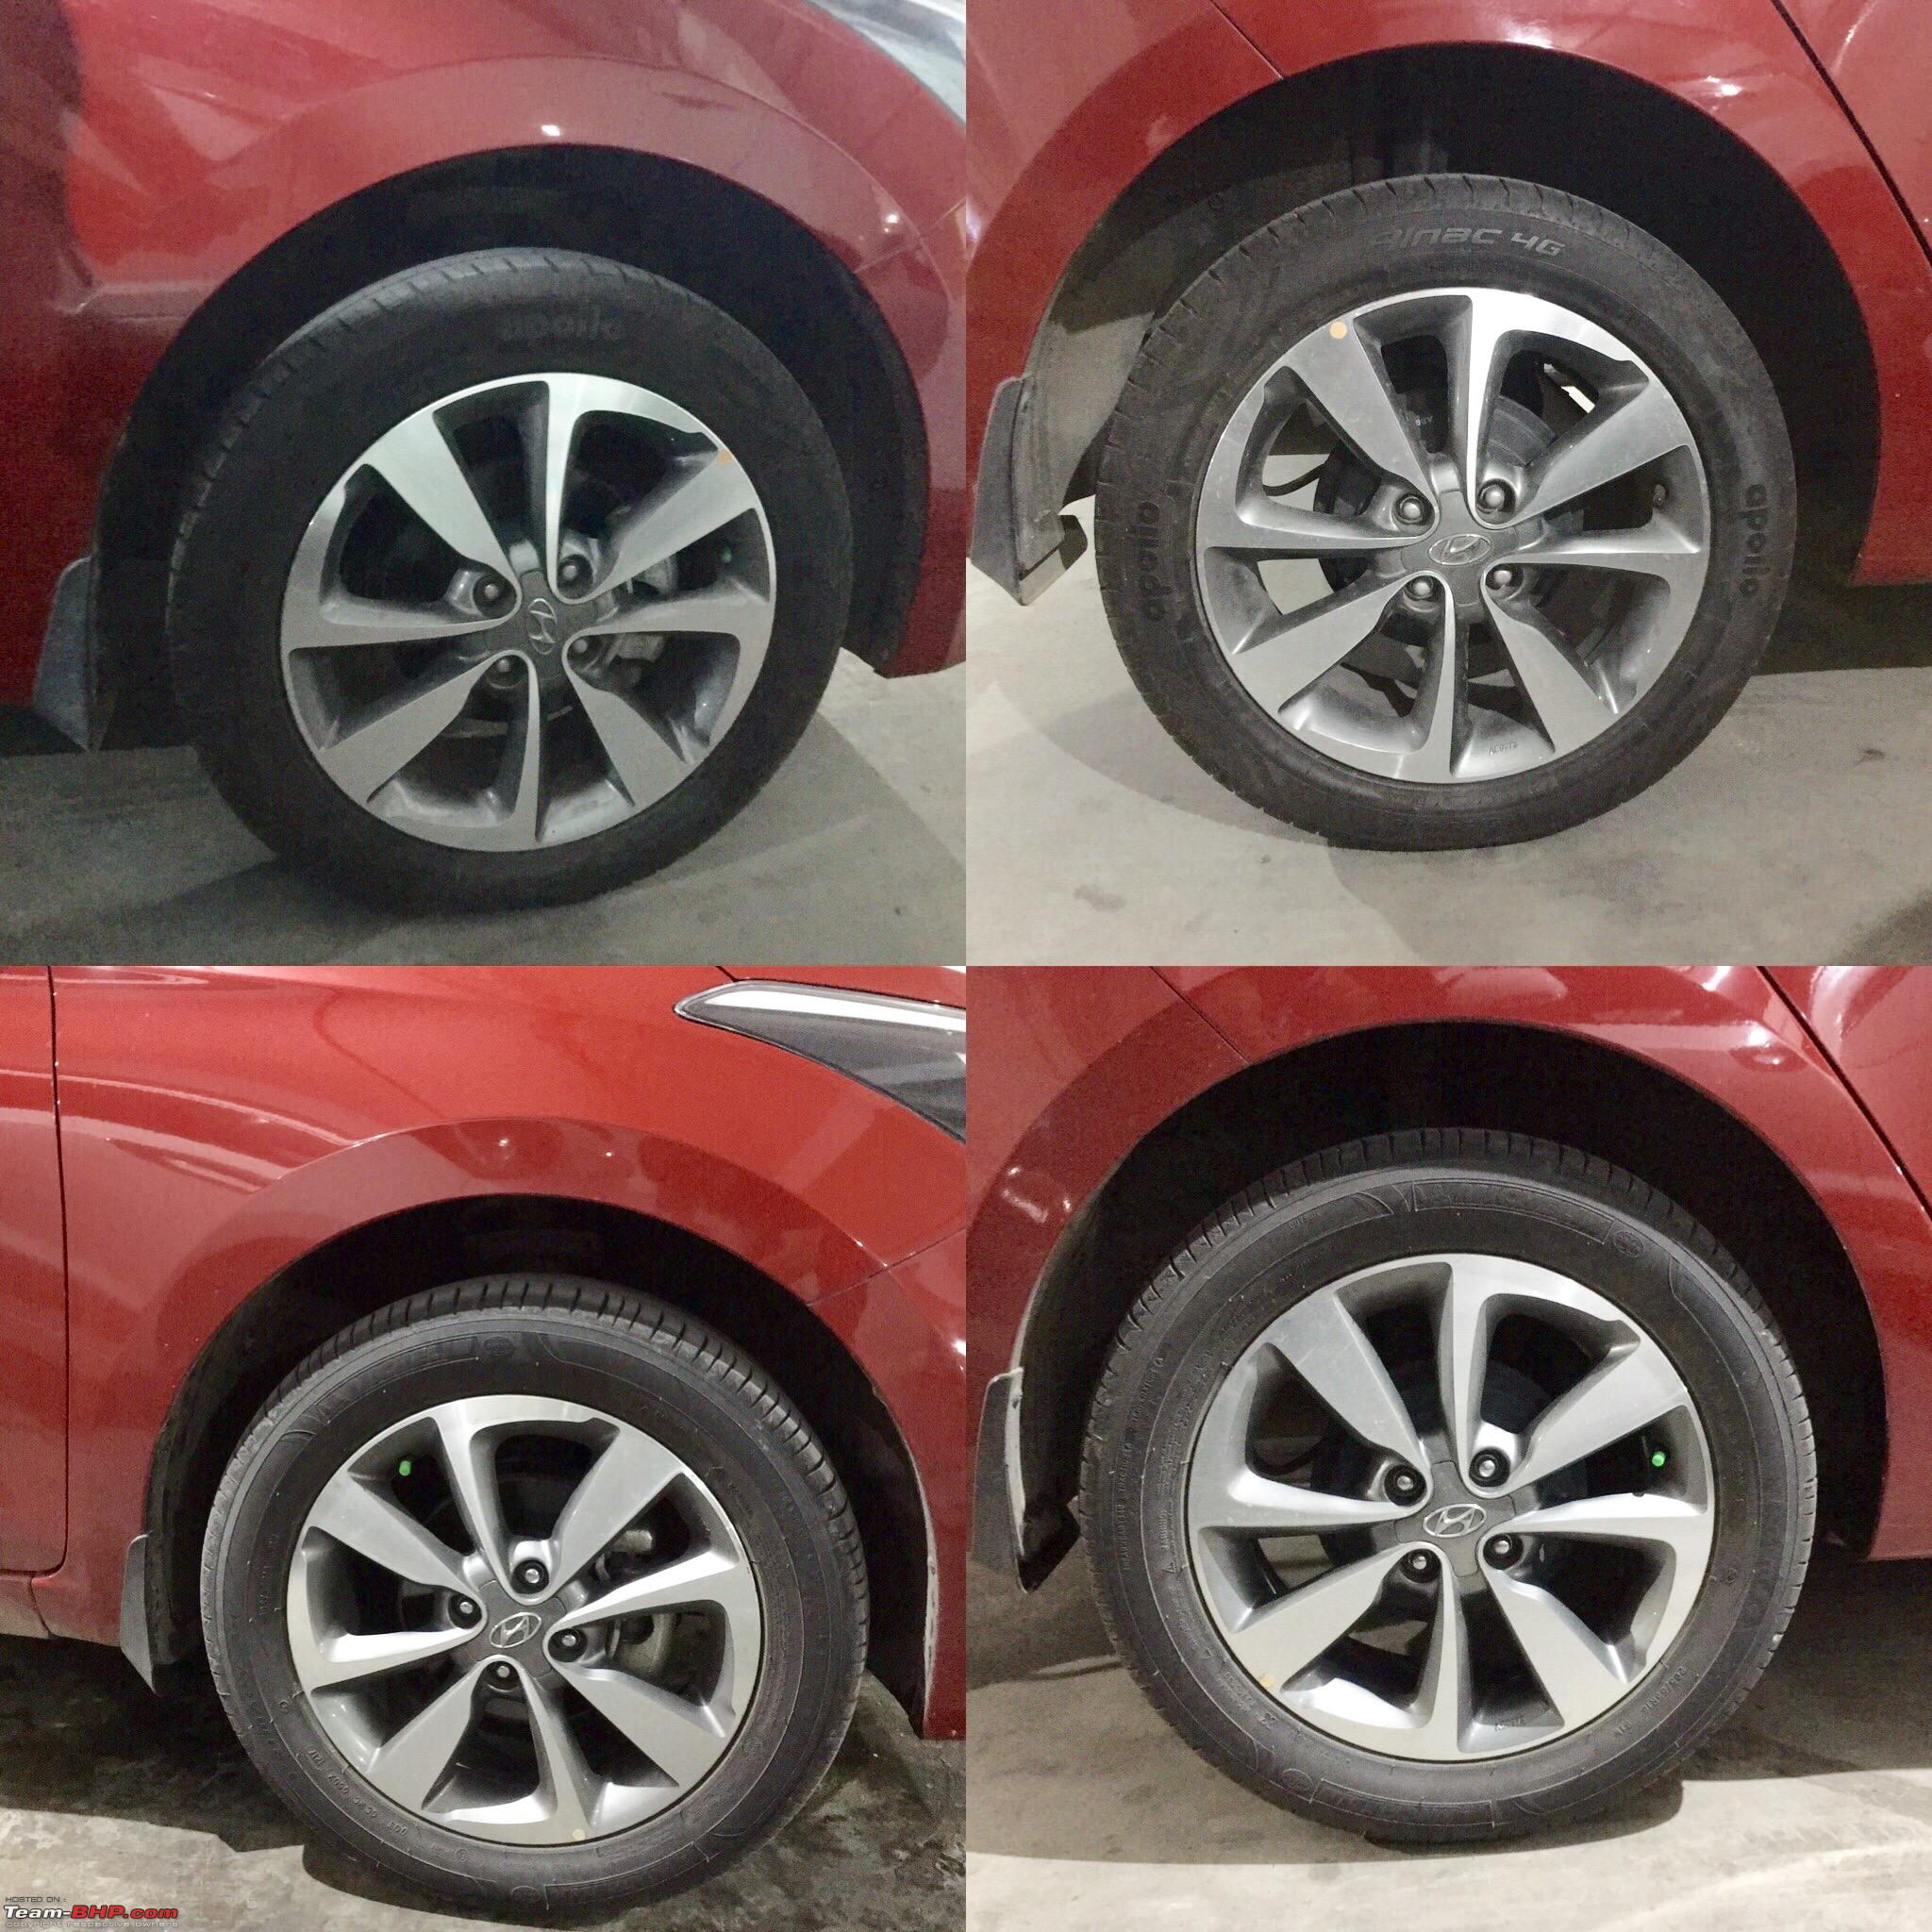 195/55-R16 vs 195/55-R16 Tire Comparison - Tire Size Calculator